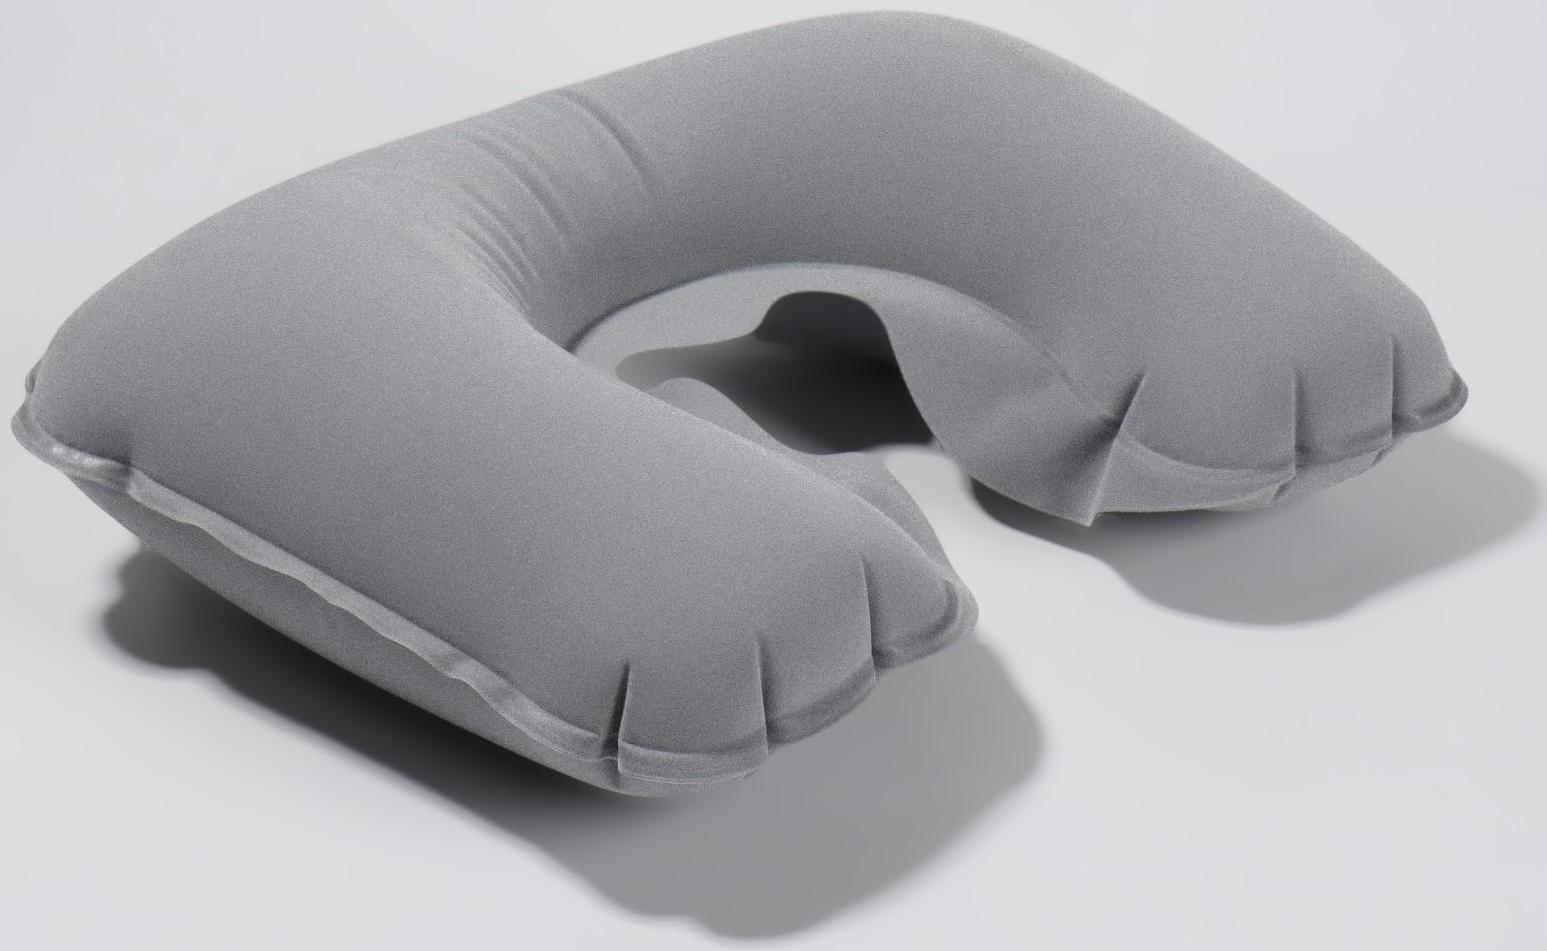 Подушка для шеи дорожная, надувная, 42 × 27 см, цвет серый